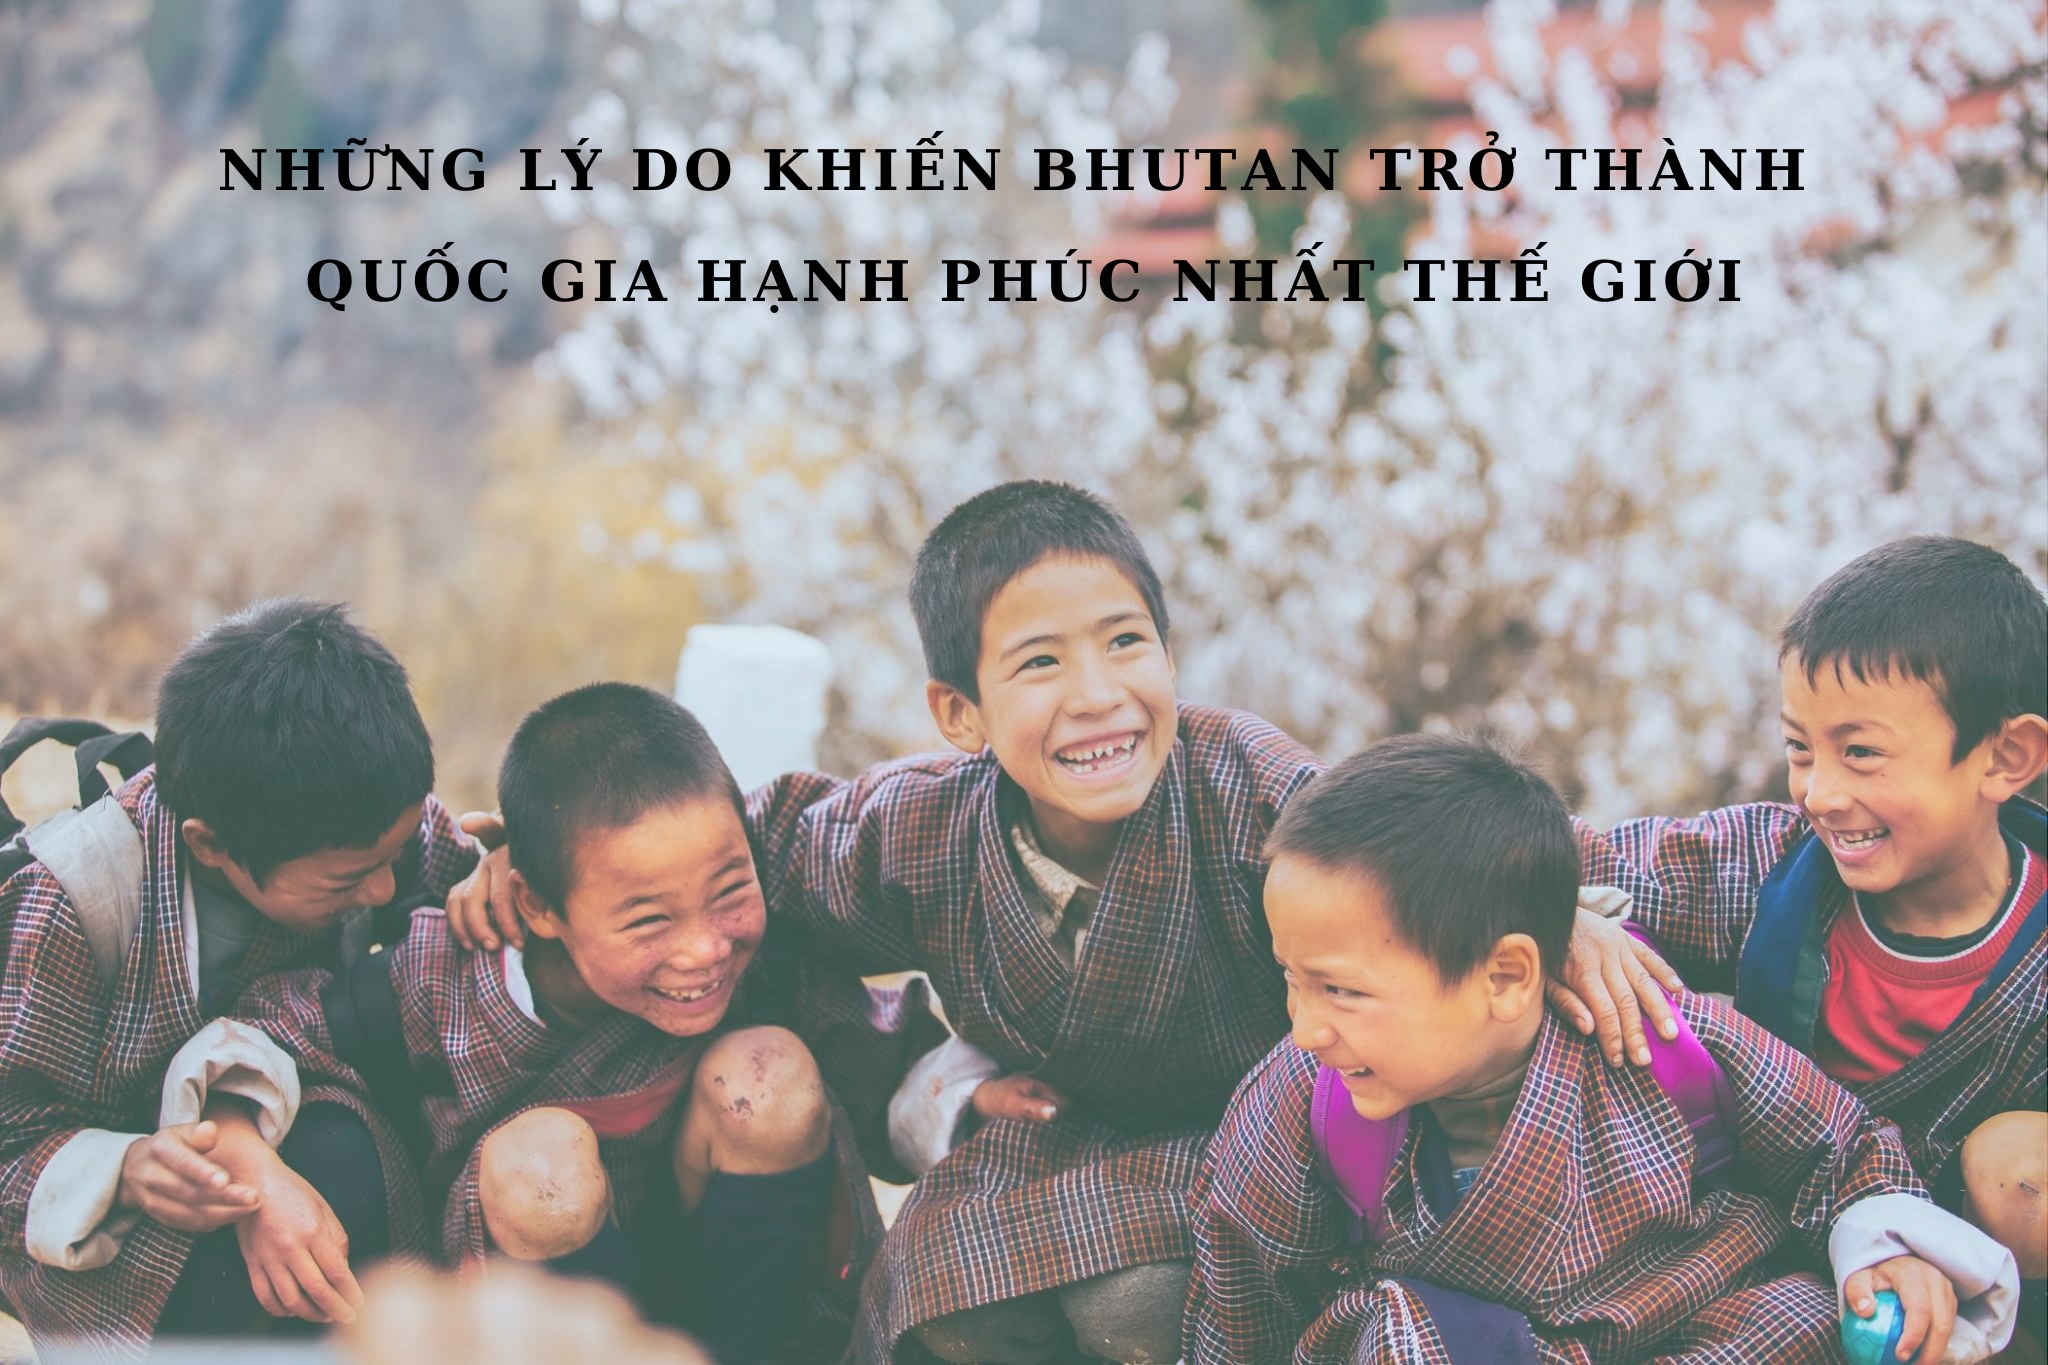 Những lý do nào khiến Bhutan trở thành vương quốc hạnh phúc nhất thế giới?